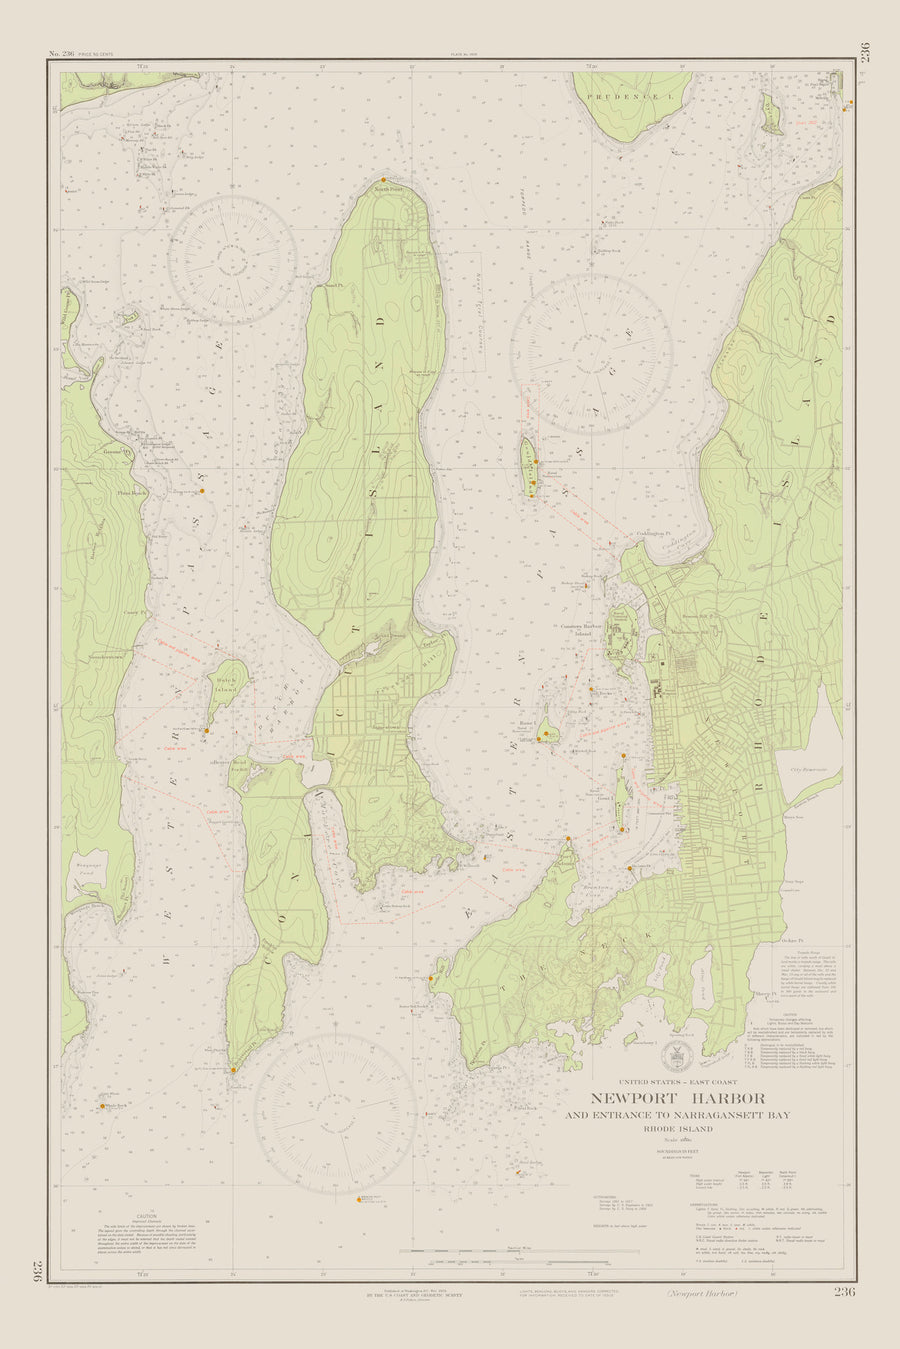 Narragansett Bay & Newport Harbor Historical Map - 1934 (green)